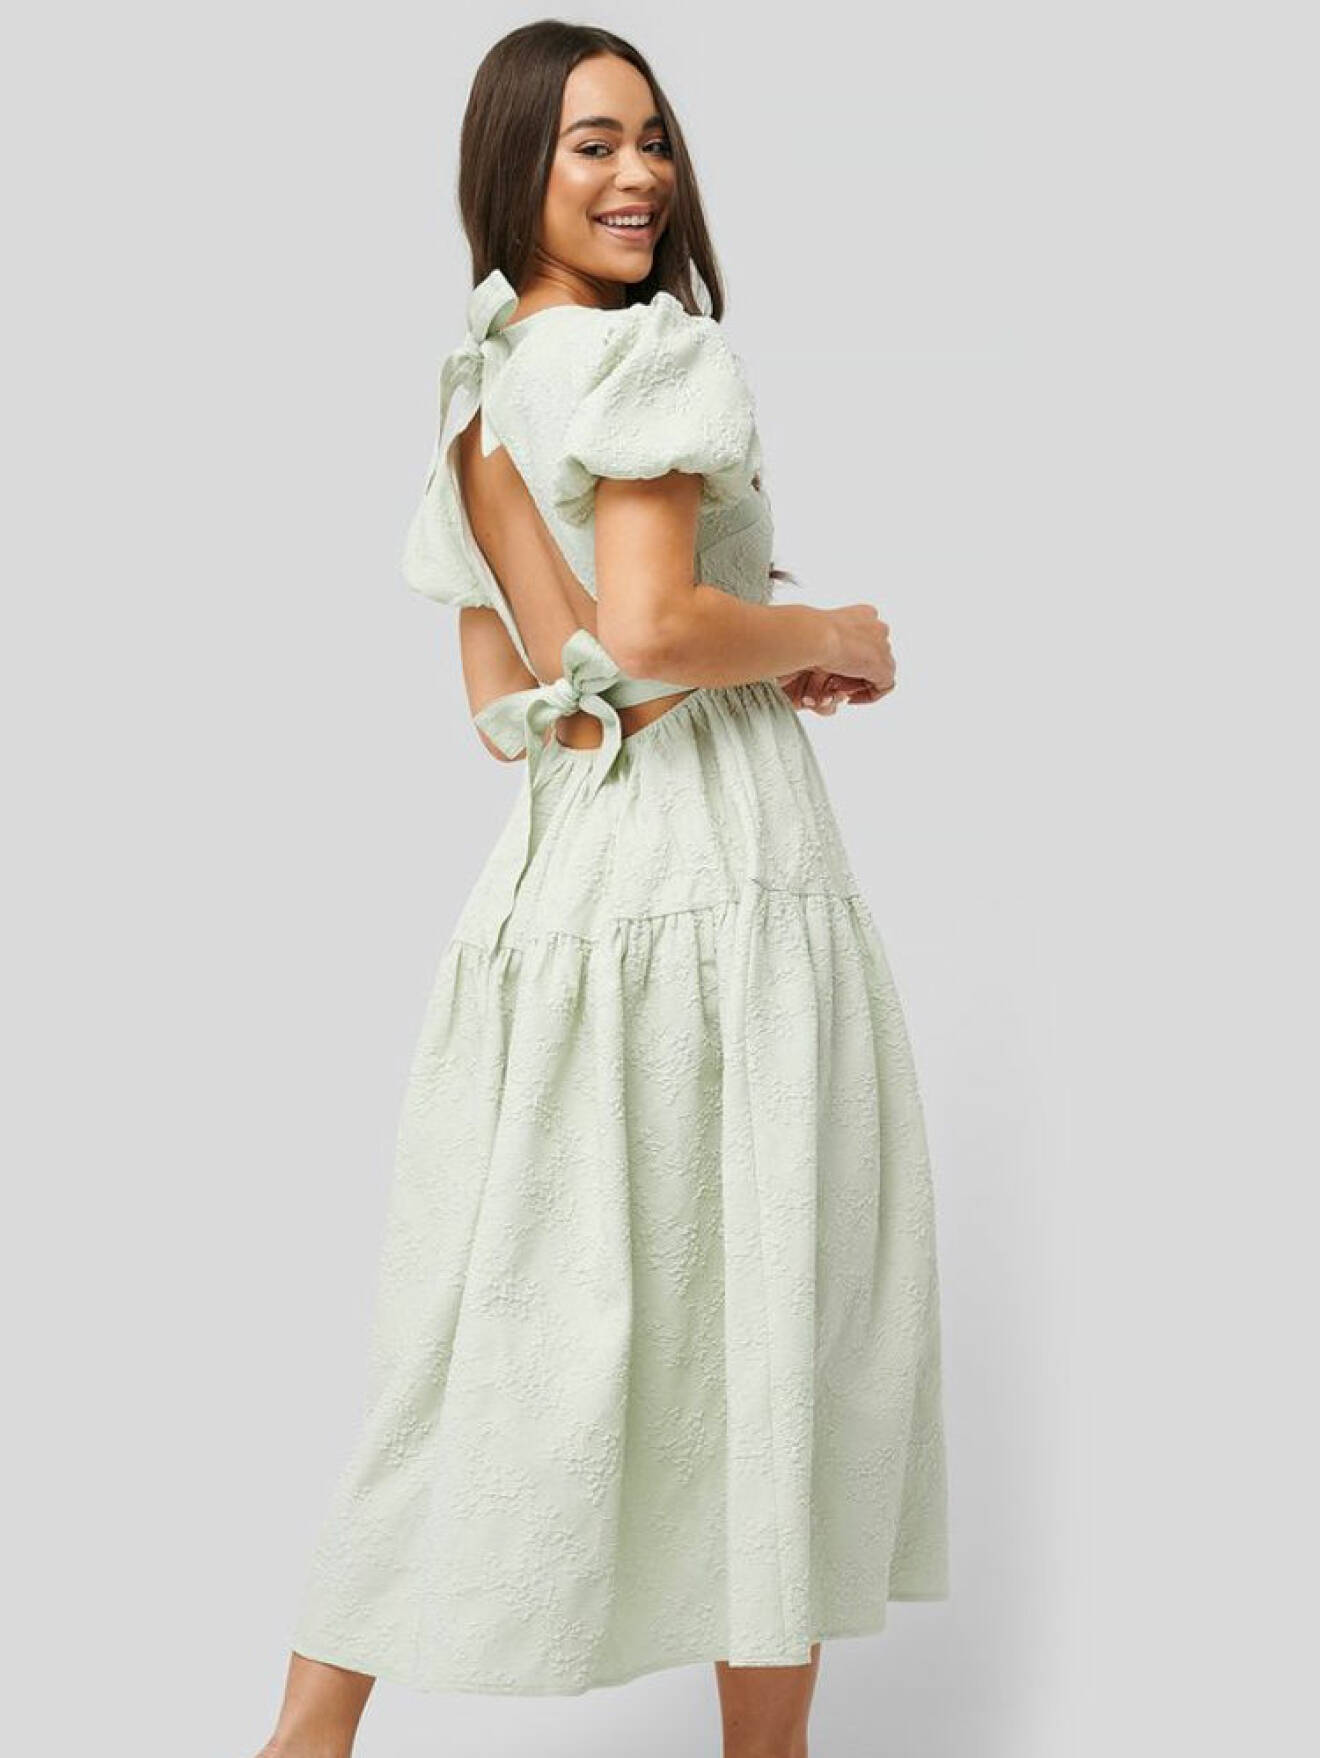 Grön klänning med öppen rygg